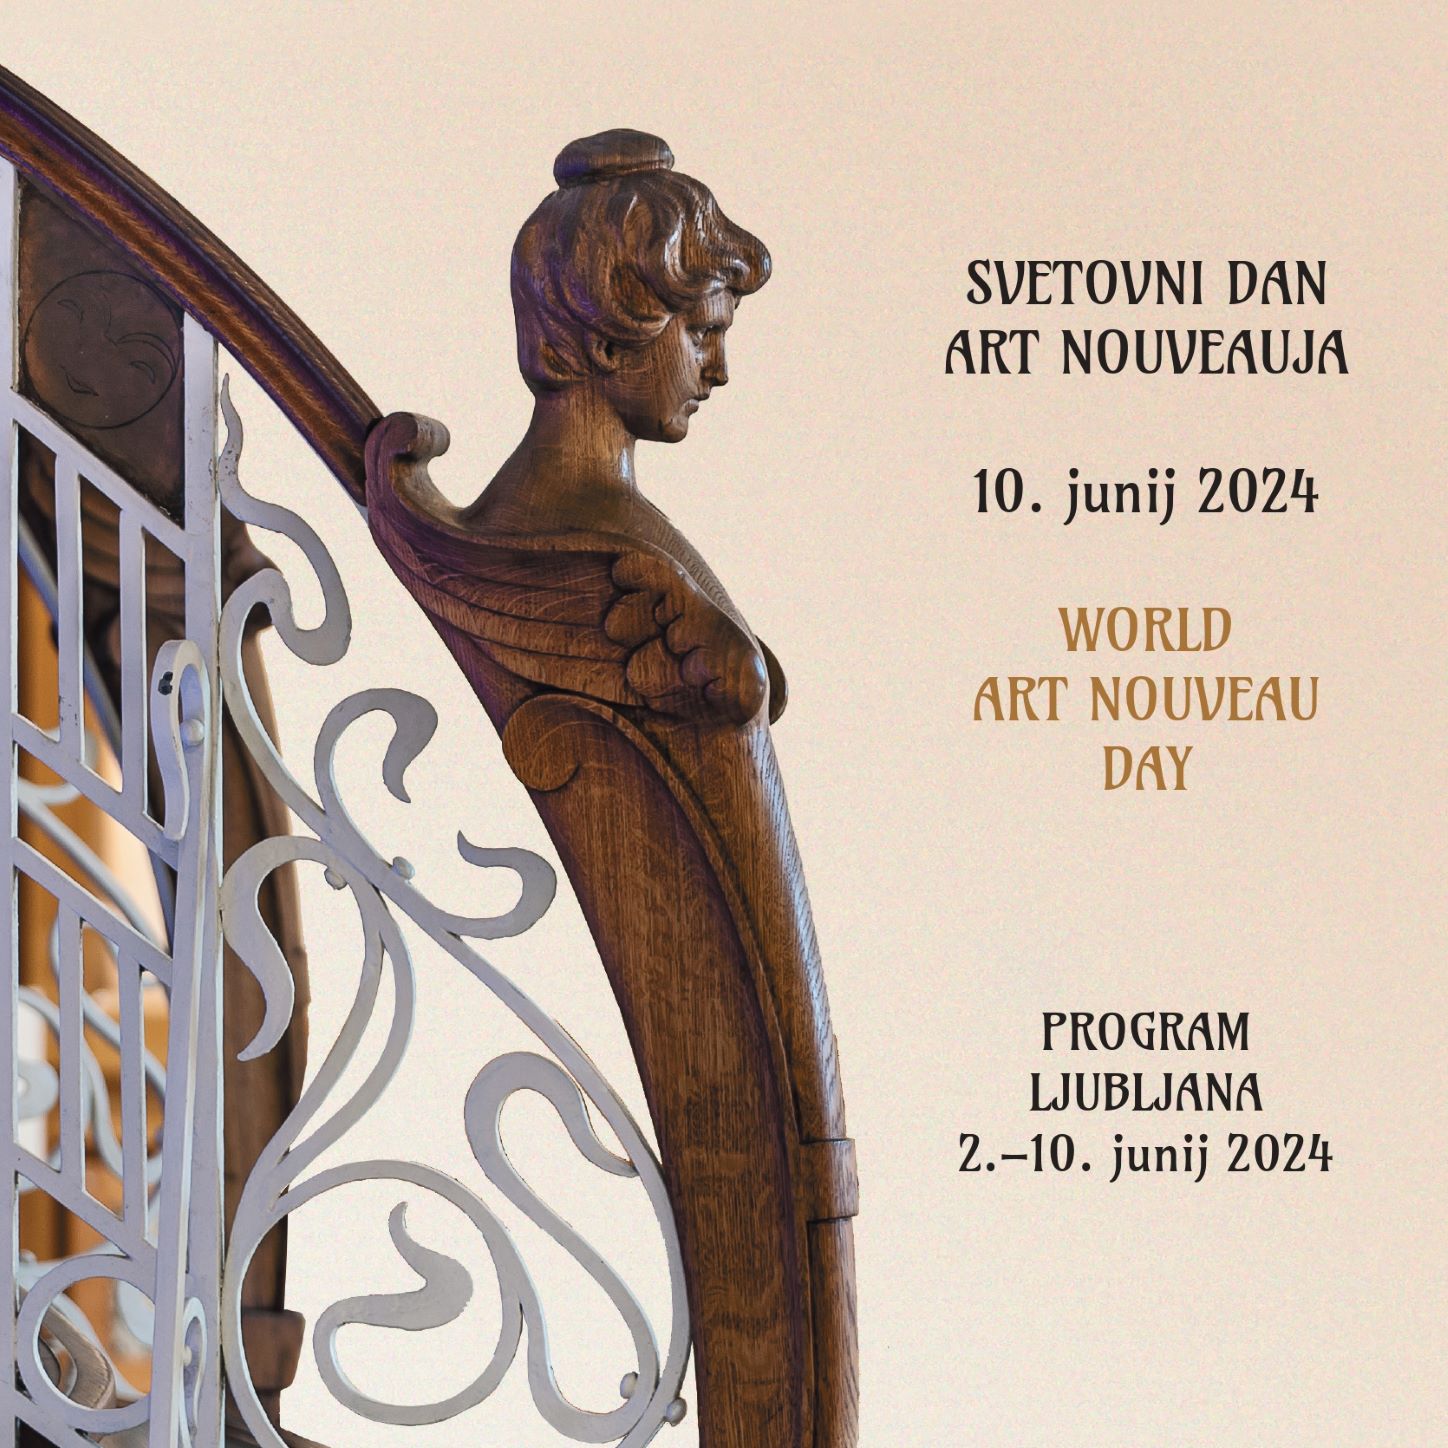 Svetovni dan Art nouveau v Ljubljani